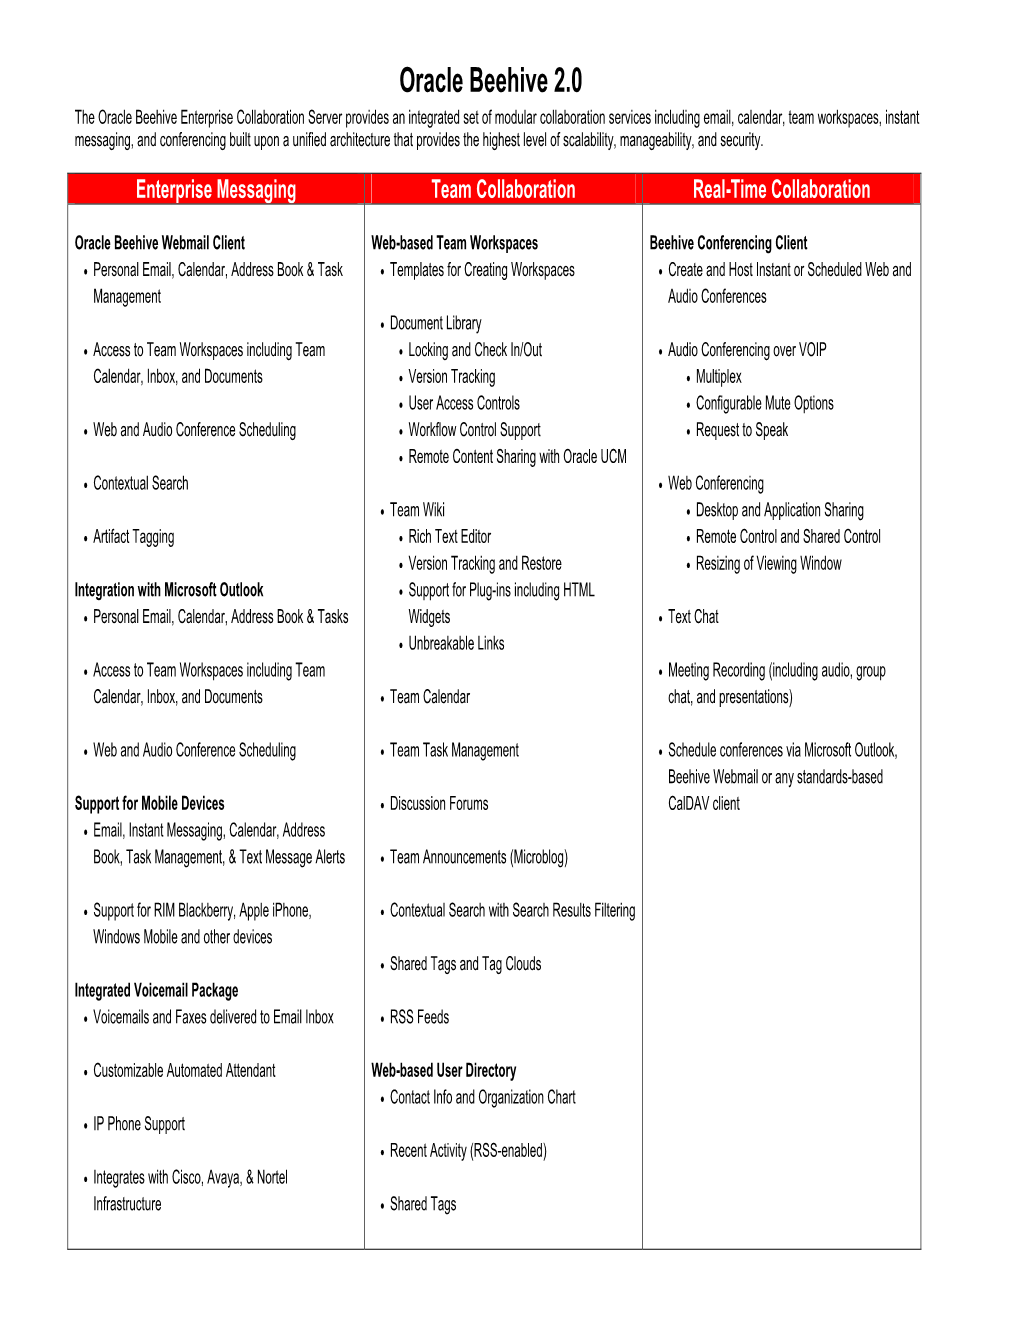 Oracle Beehive Enterprise Collaboration Feature List (PDF)